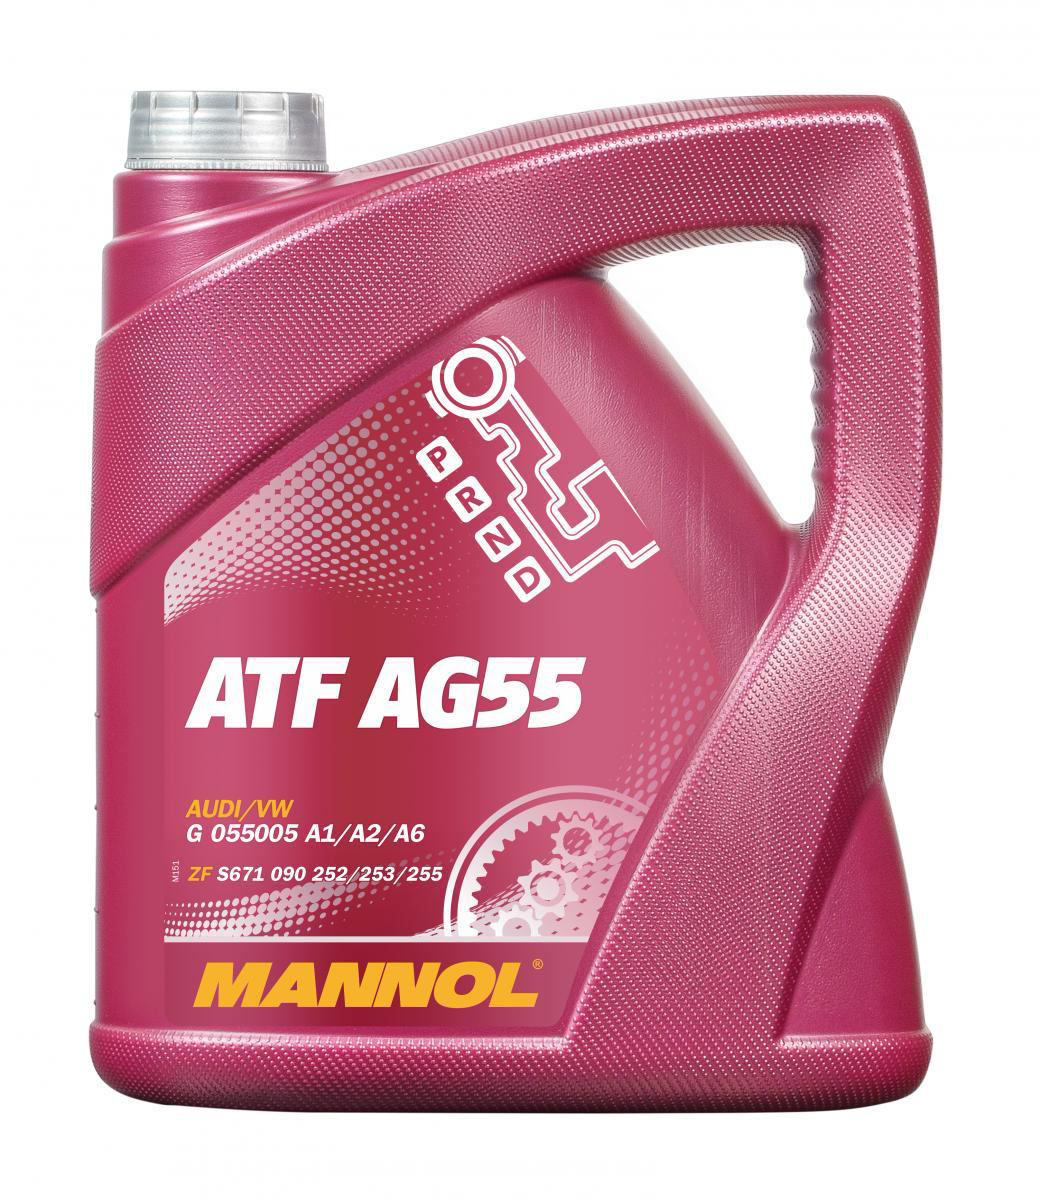 ATF AG55